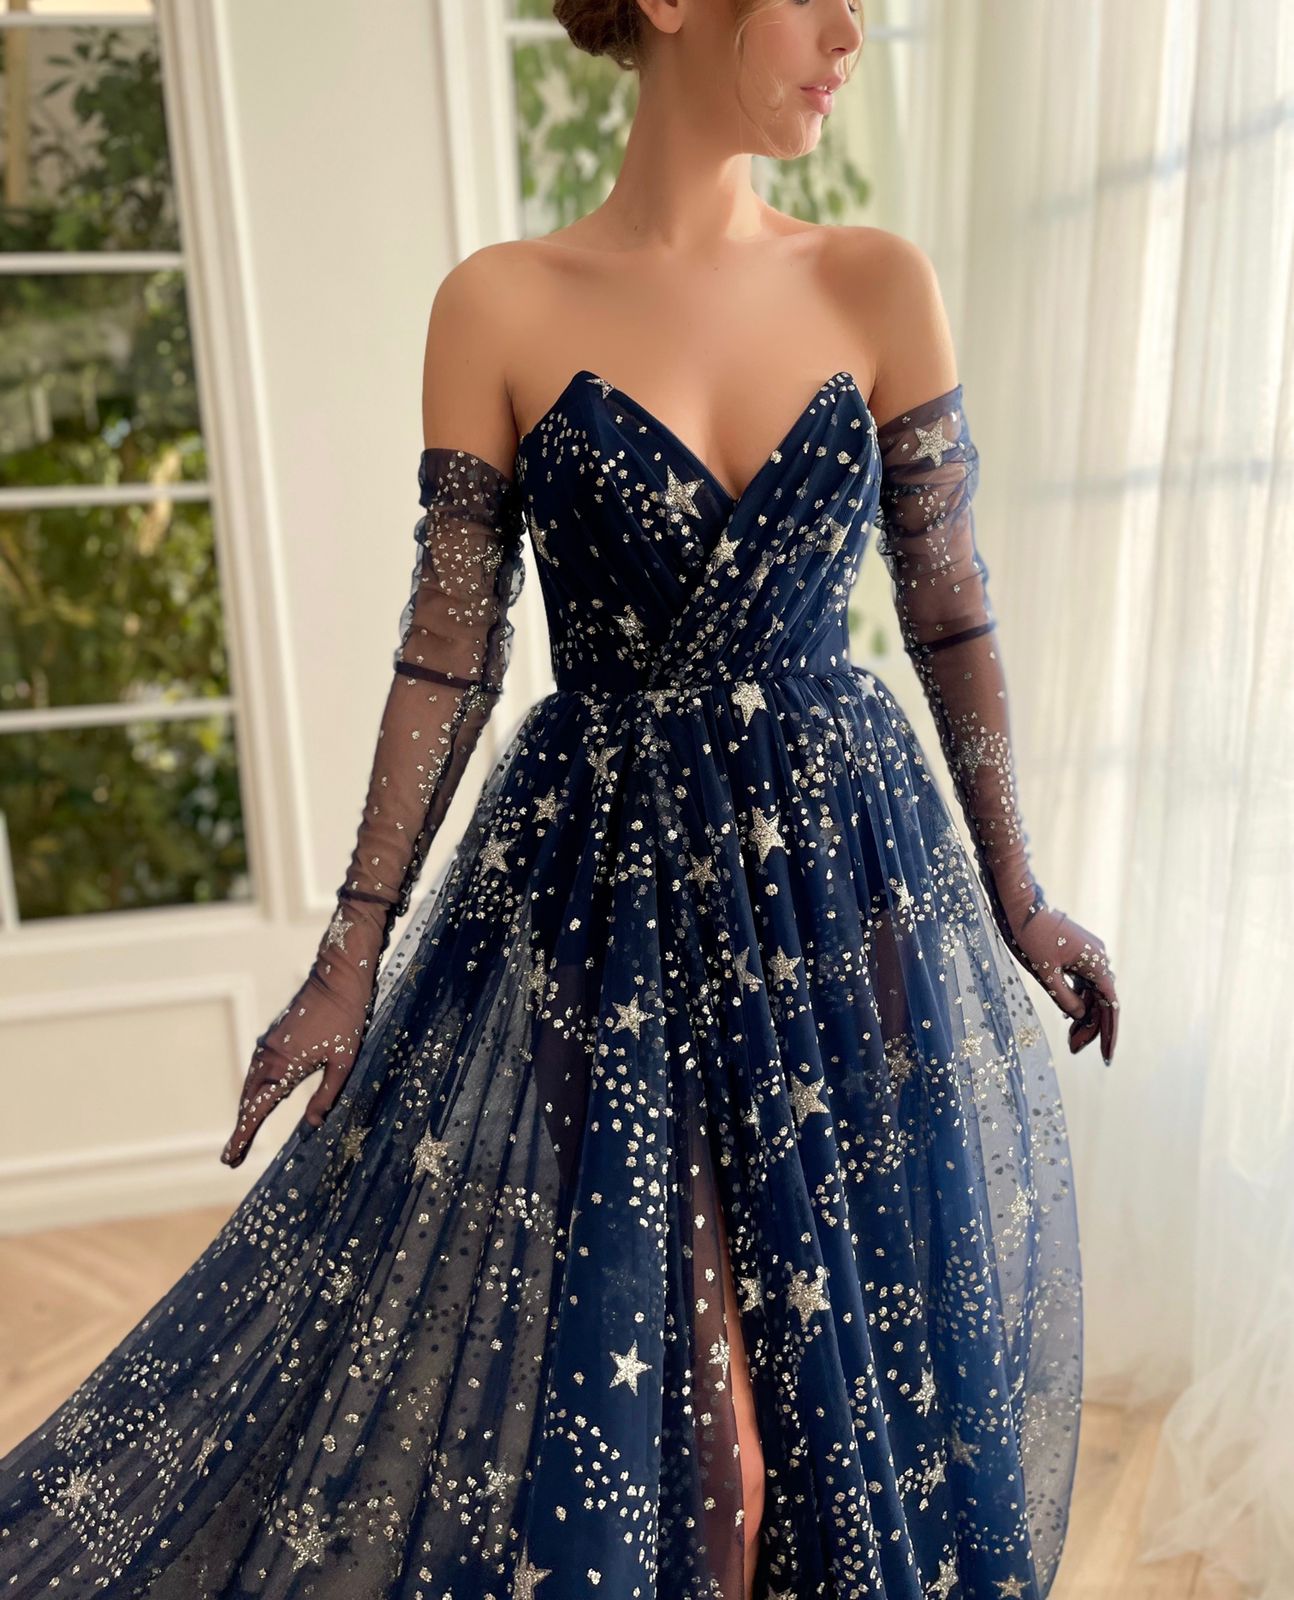 stars dress